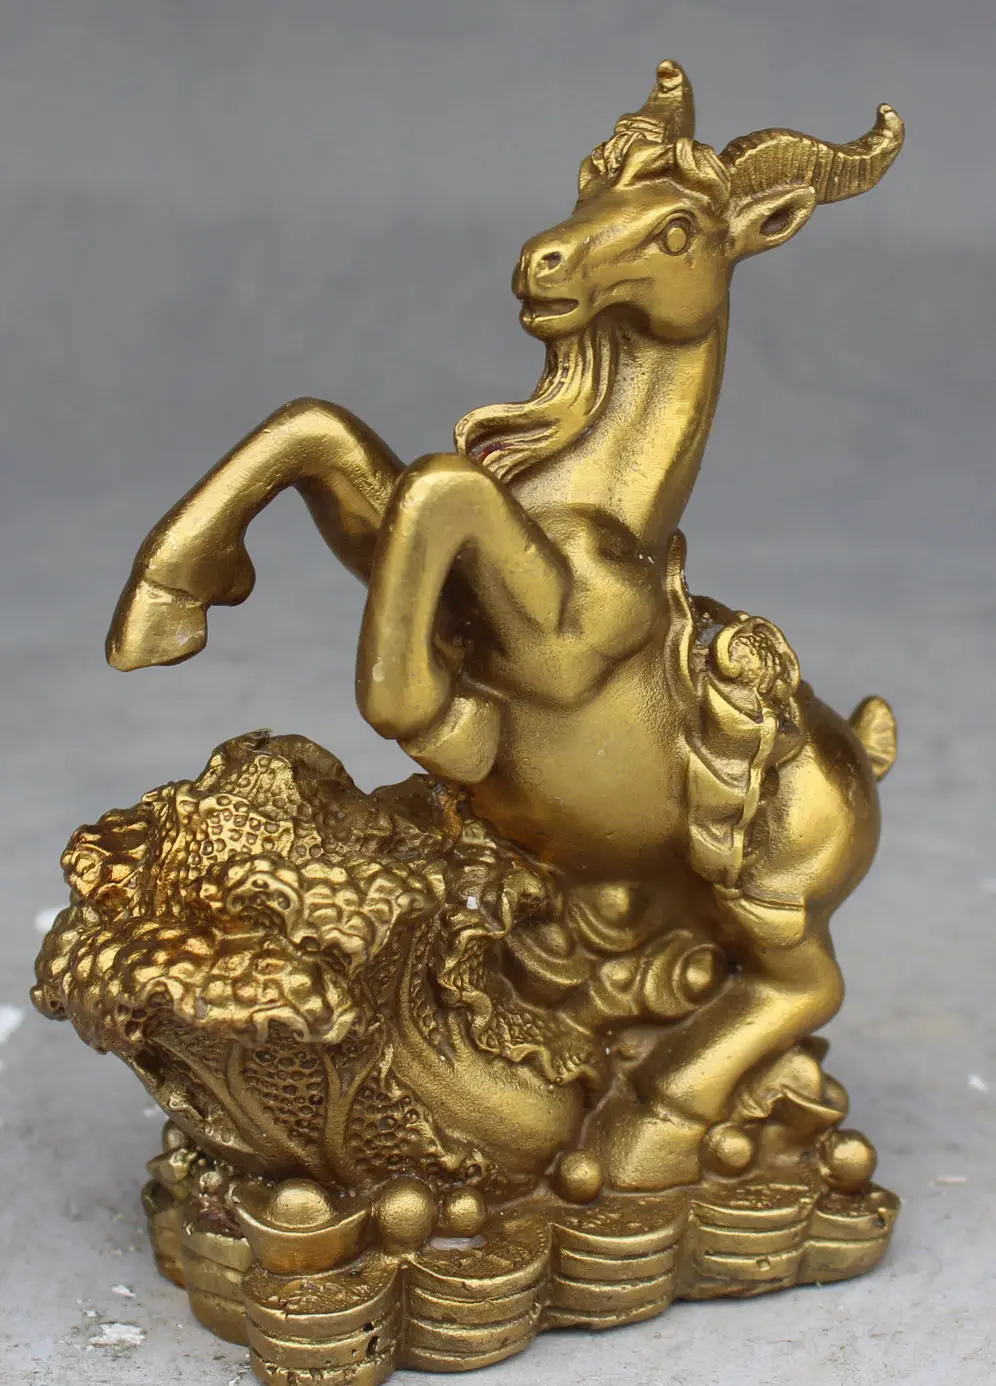 Китайская бронзовая статуэтка "Овечка капуста" для привлечения удачи в Фэн-Шуй.